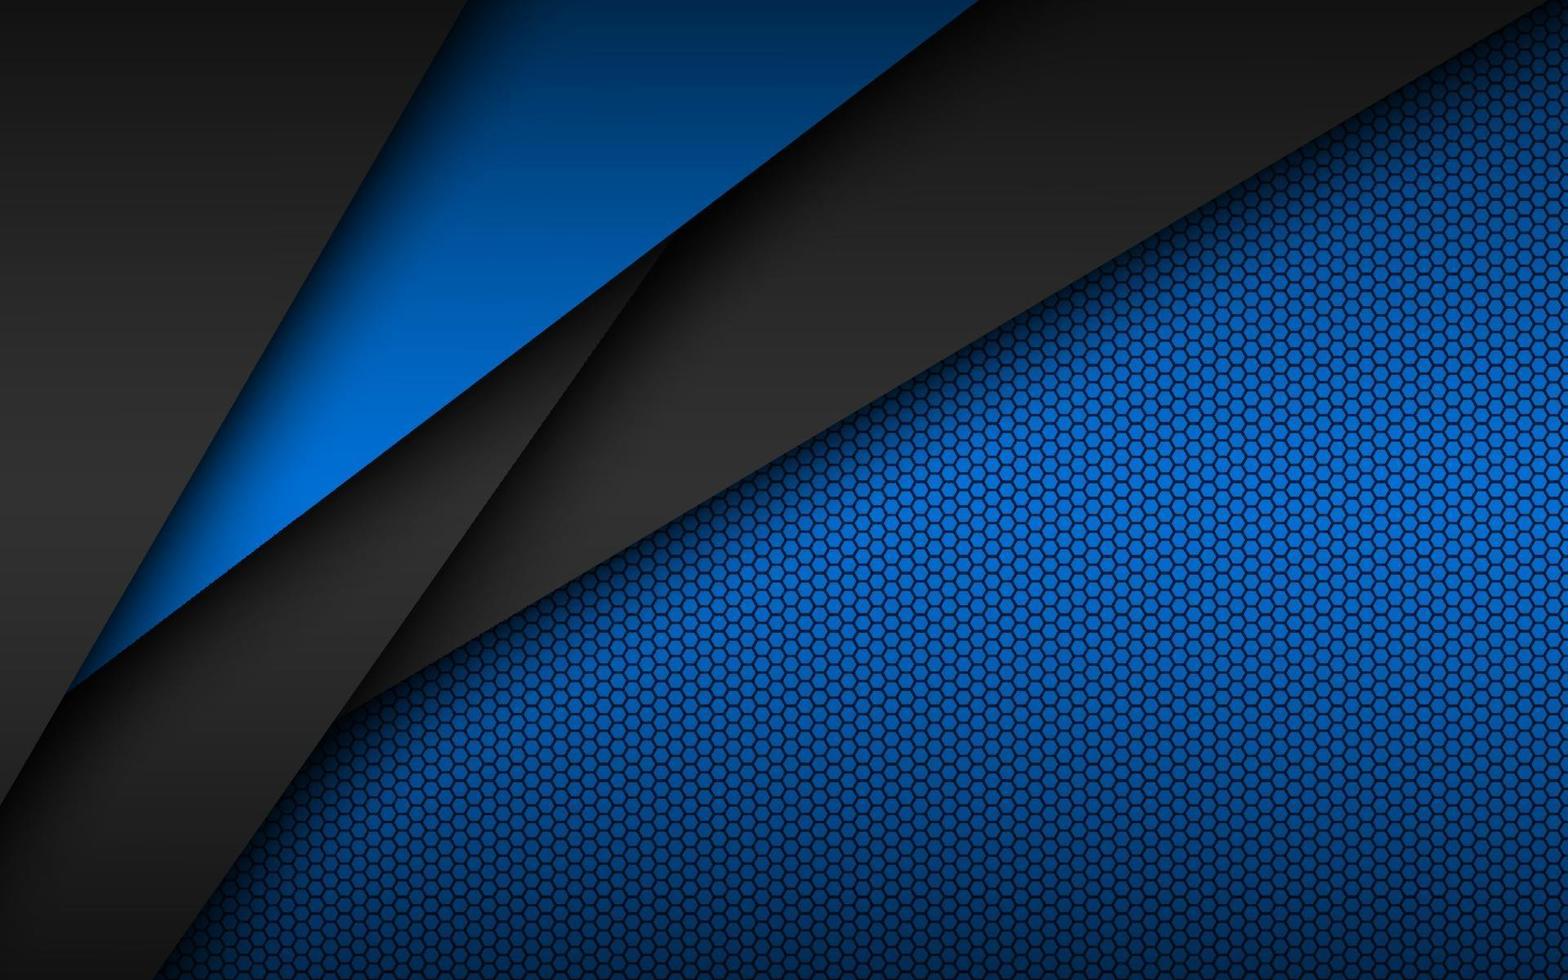 svart och blå modern materialdesign med perforerat sexkantigt mönster, mörka överlagrade pappersark, företagsmall för ditt företag, vektor abstrakt widescreen bakgrund